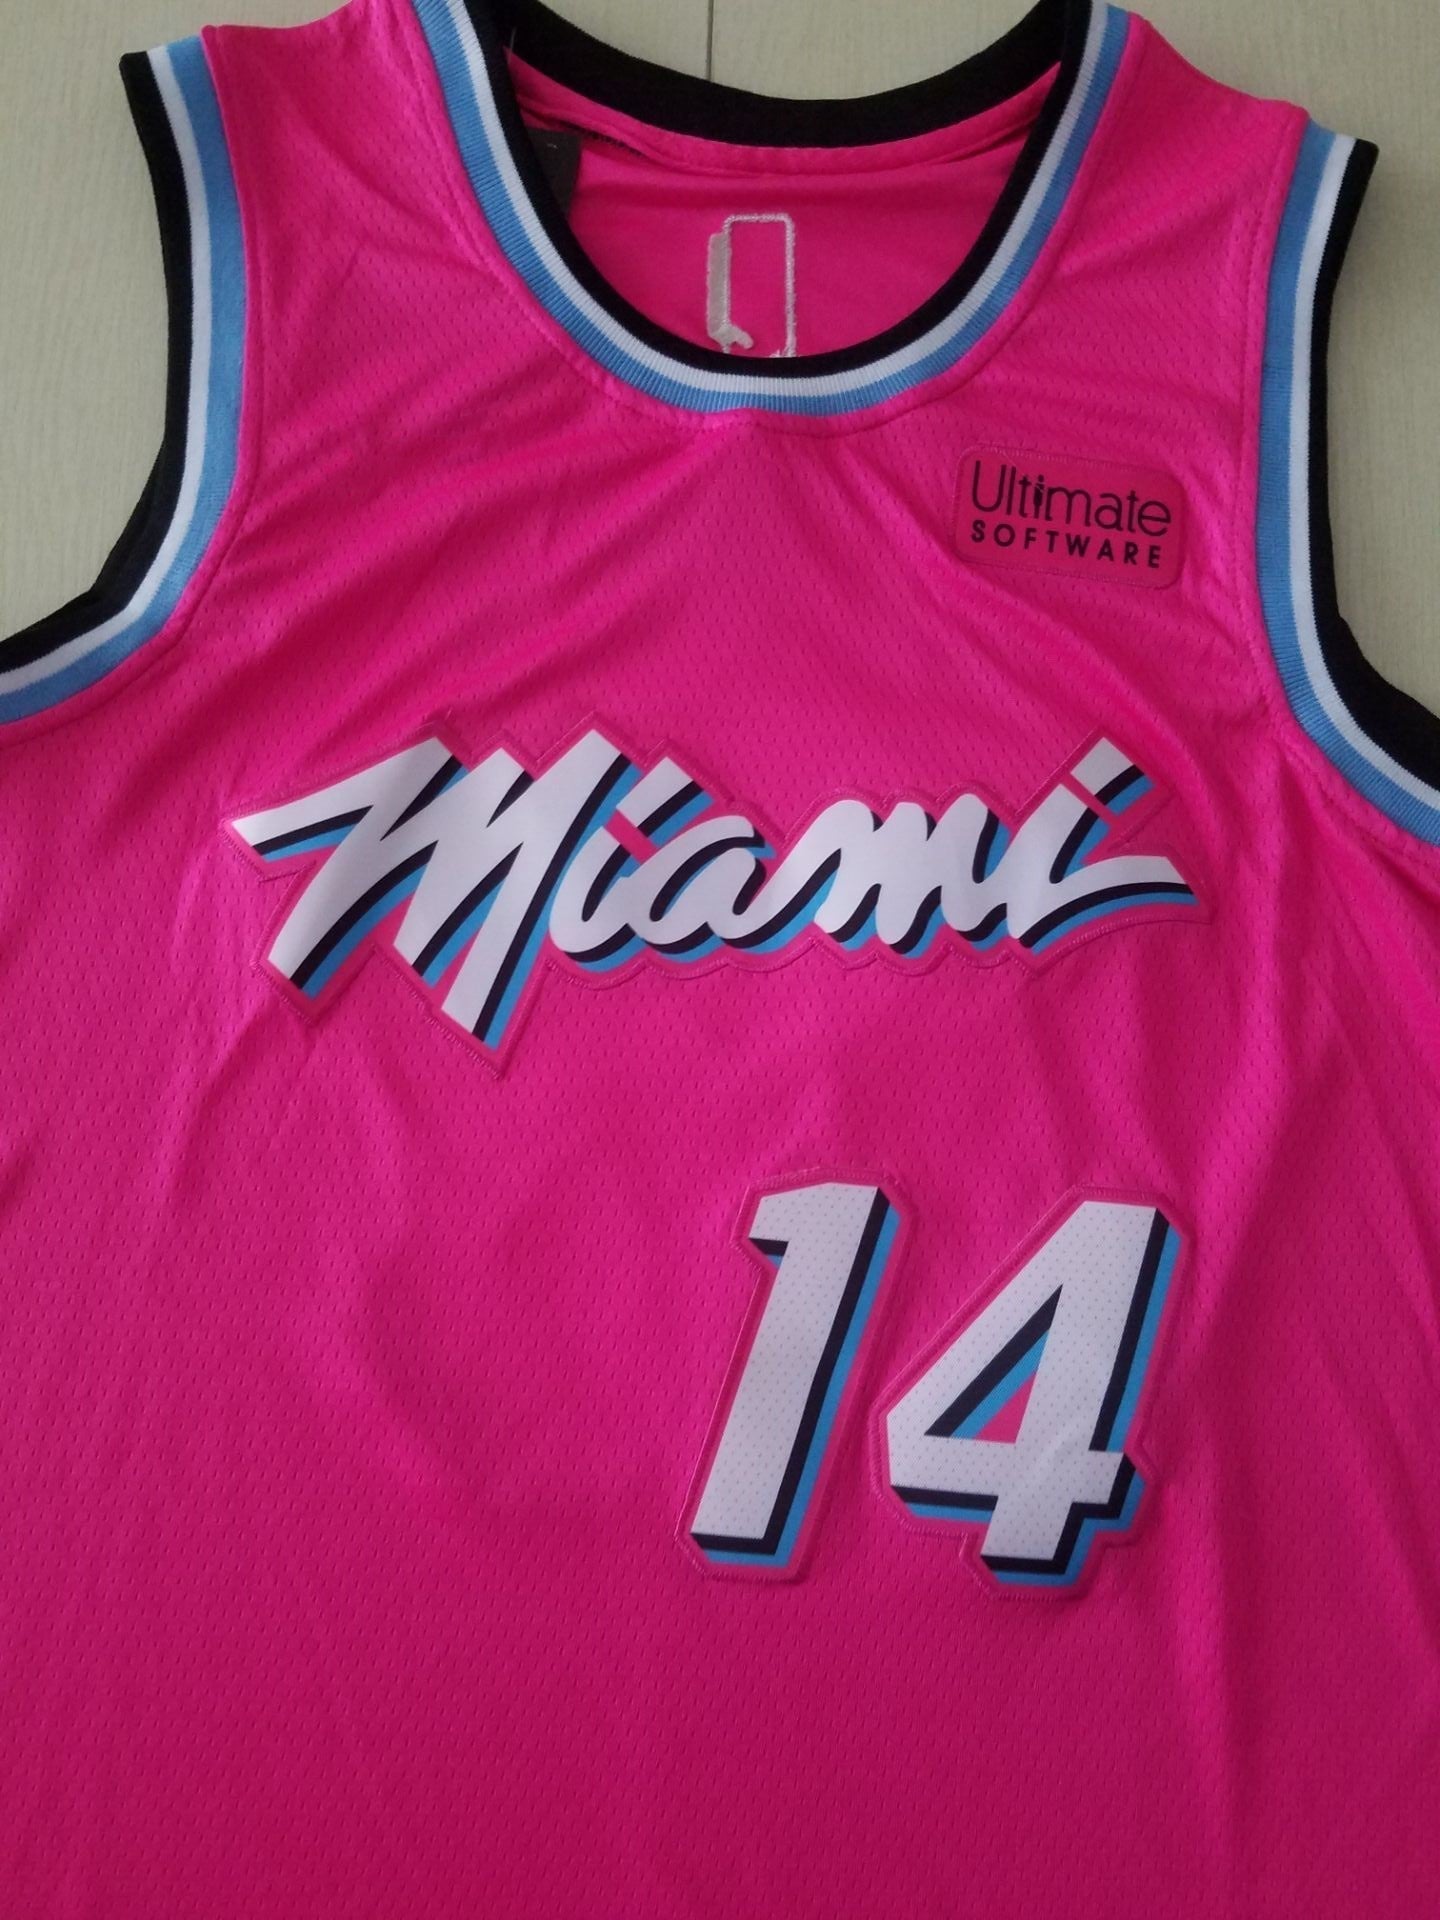 Men's Miami Heat Tyler Herro #14 Pink 2020/21 Swingman Jersey